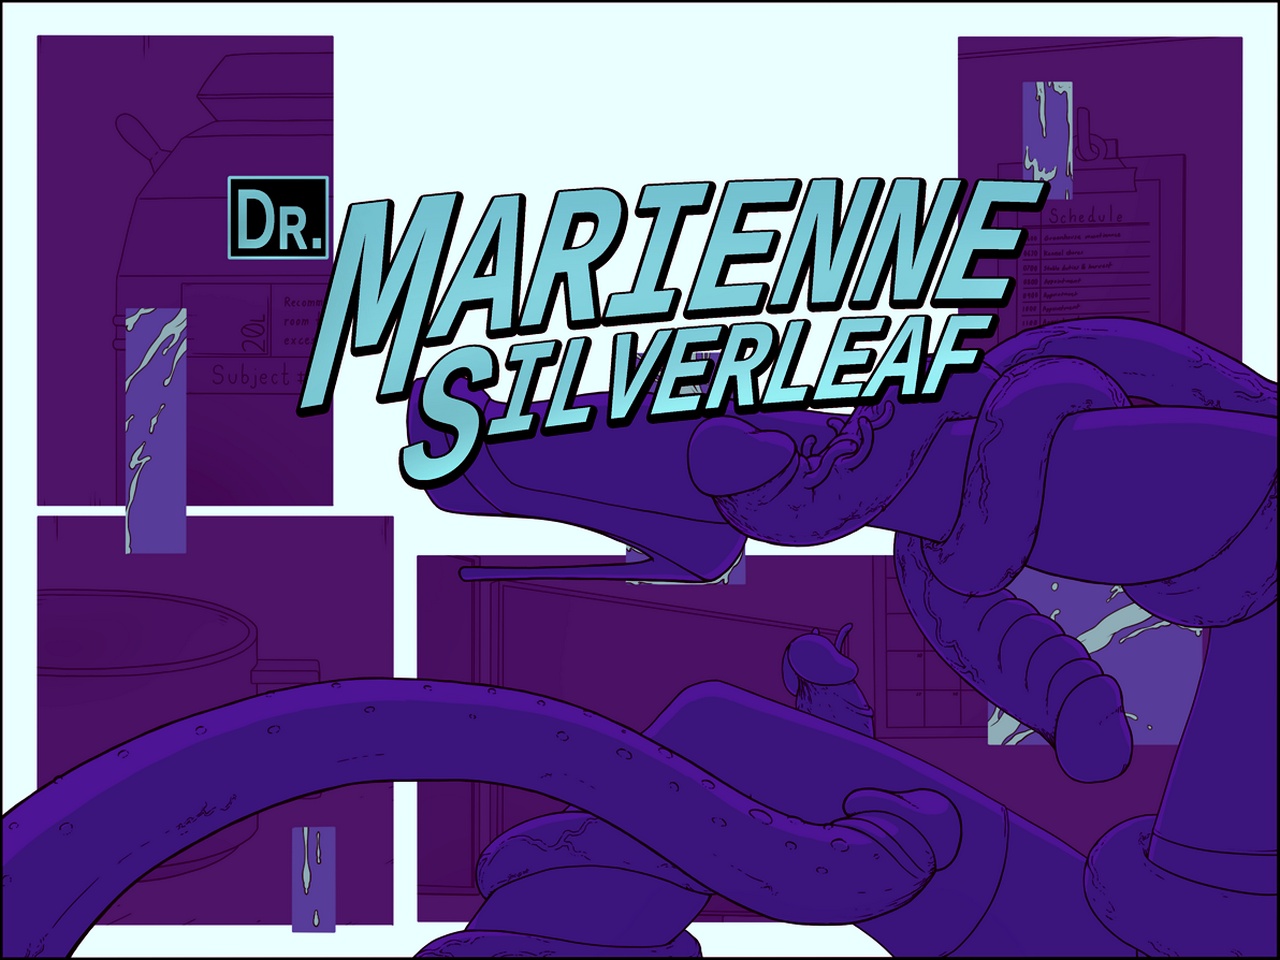 Dr. Marienne Silverleaf